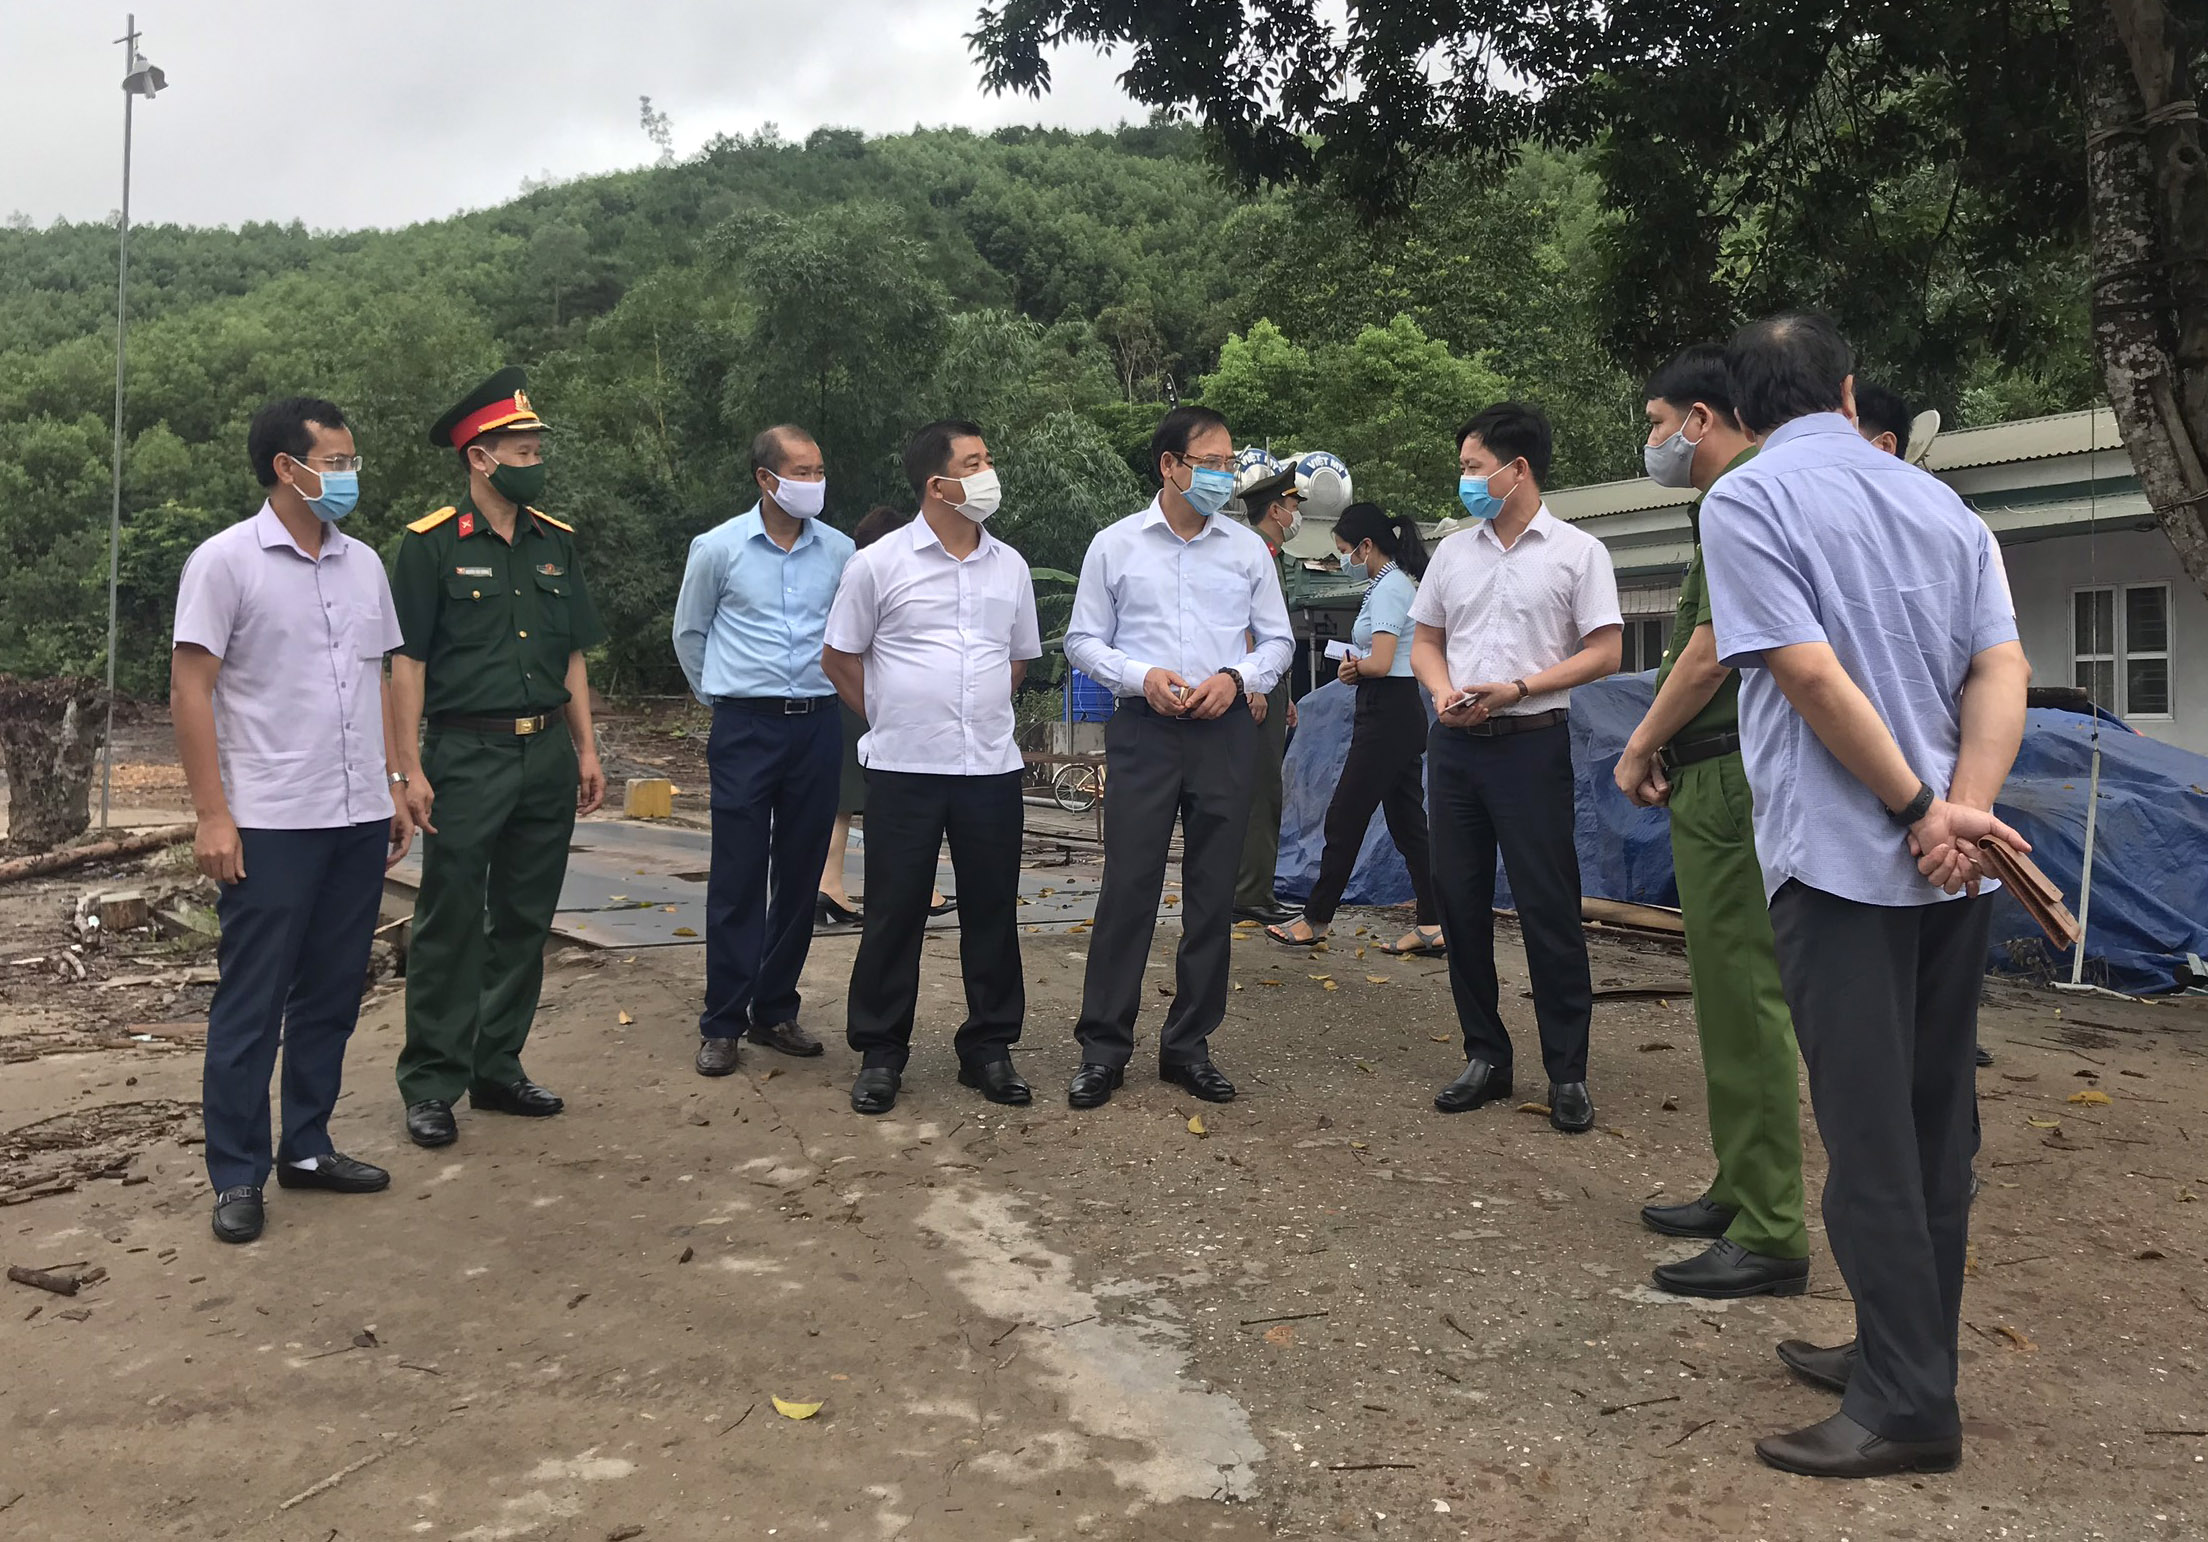 Đồng chí Đặng Huy Hậu kiểm tra địa điểm dự kiến thành lập chốt kiểm dịch giữa huyện Tiên Yên và huyện Đình Lập (tỉnh Lạng Sơn).